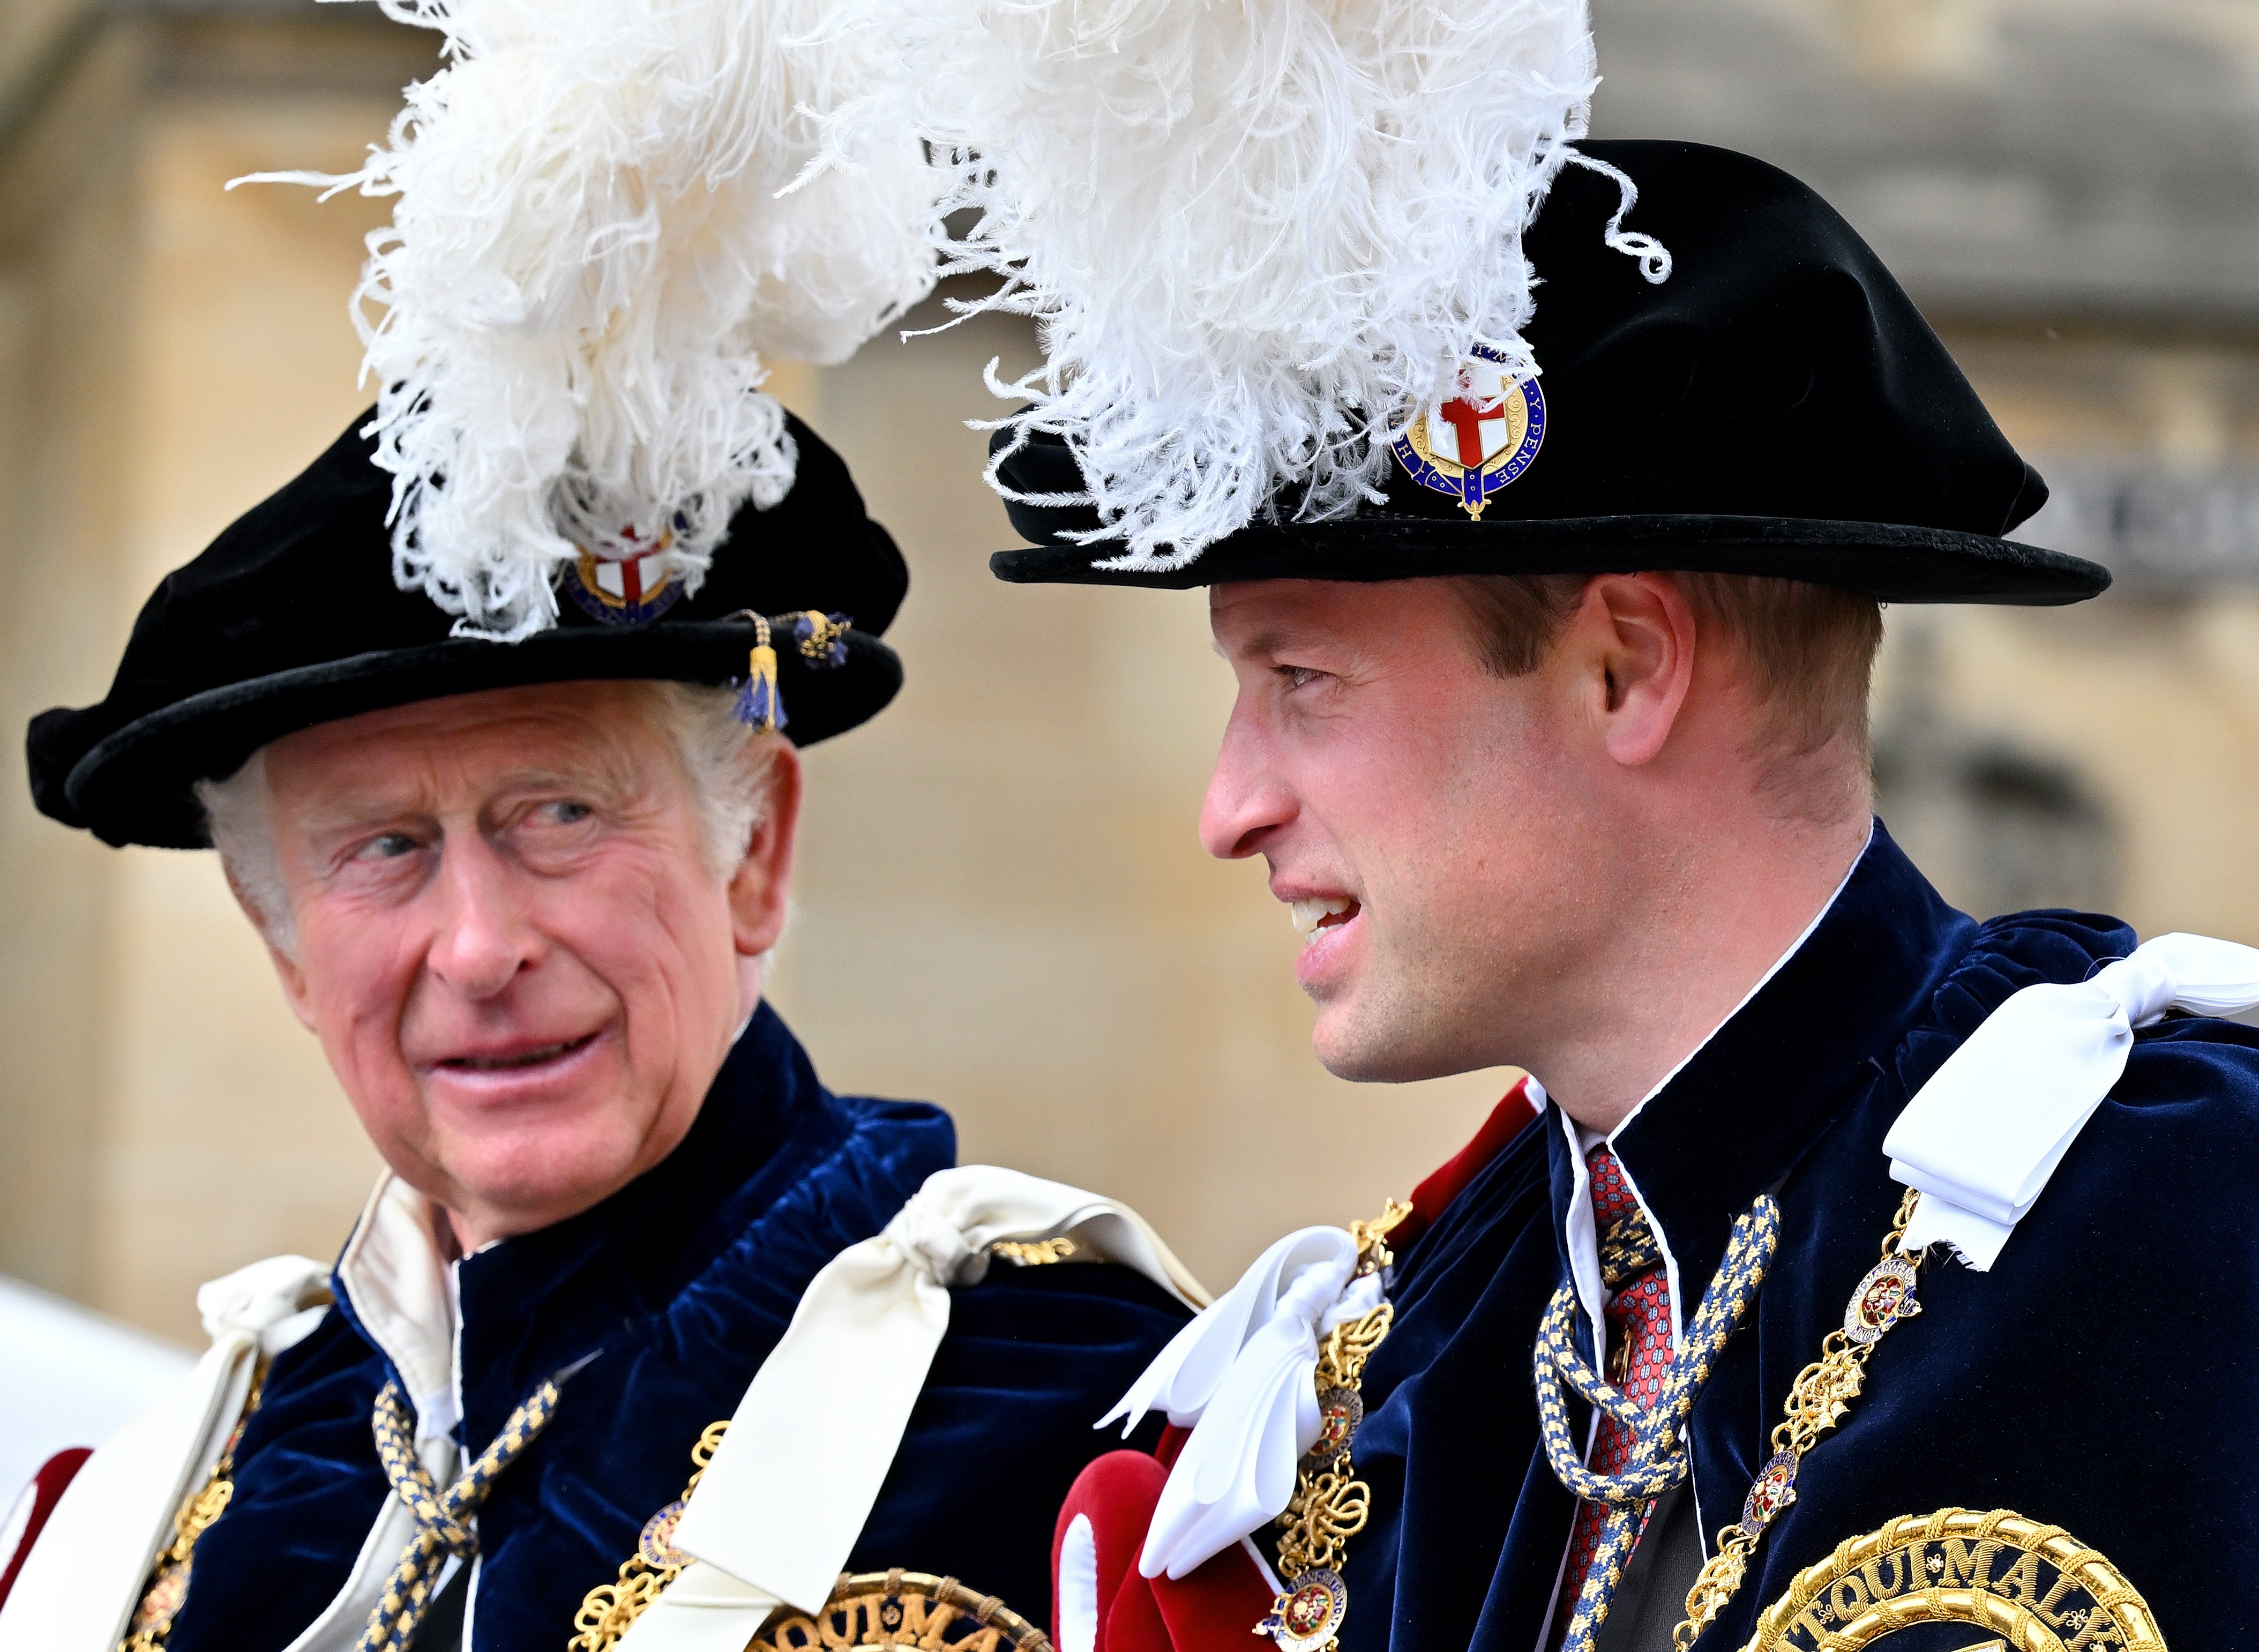 El príncipe Charles, ahora rey y el príncipe William, en el servicio de la Orden de la Jarretera en la Capilla de St. George, Castillo de Windsor, el 13 de junio de 2022 en Windsor, Inglaterra. | Foto: Getty Images